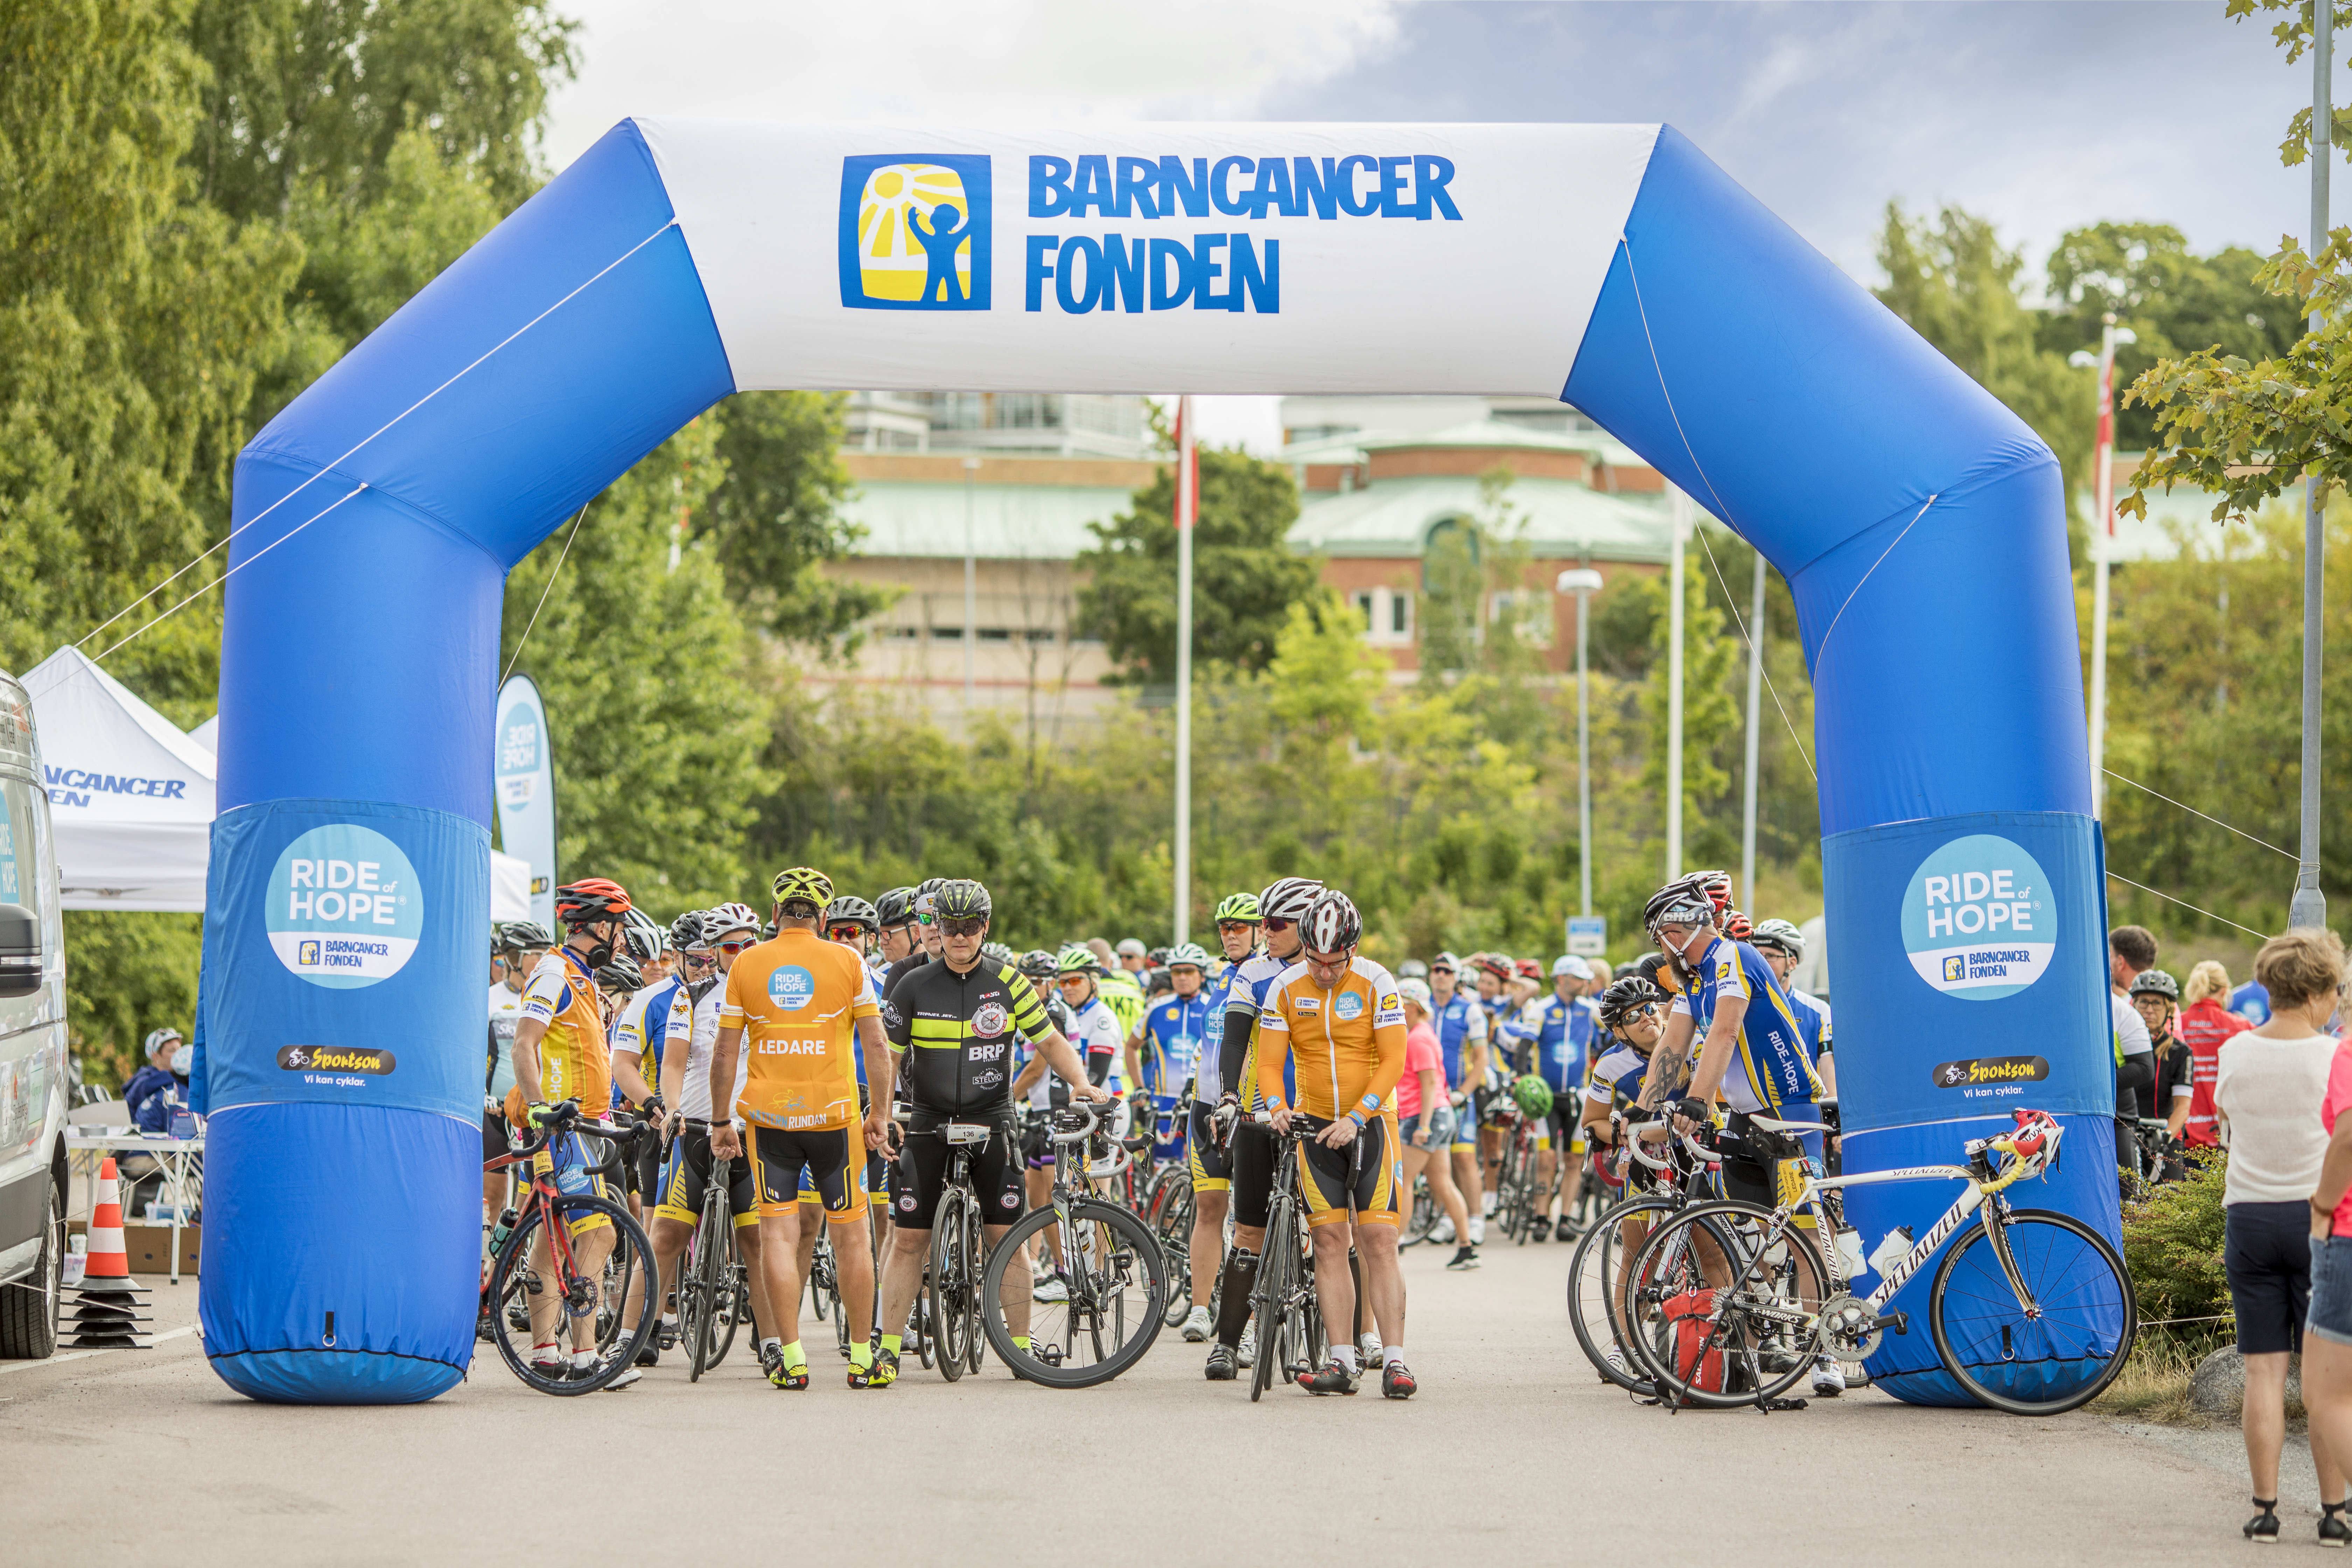 Hundratals cyklister ska under åtta dagar cykla den 120 mil långa sträckan Lund-Stockholm för att samla in pengar till kampen mot barncancer. Foto: Magnus Glans